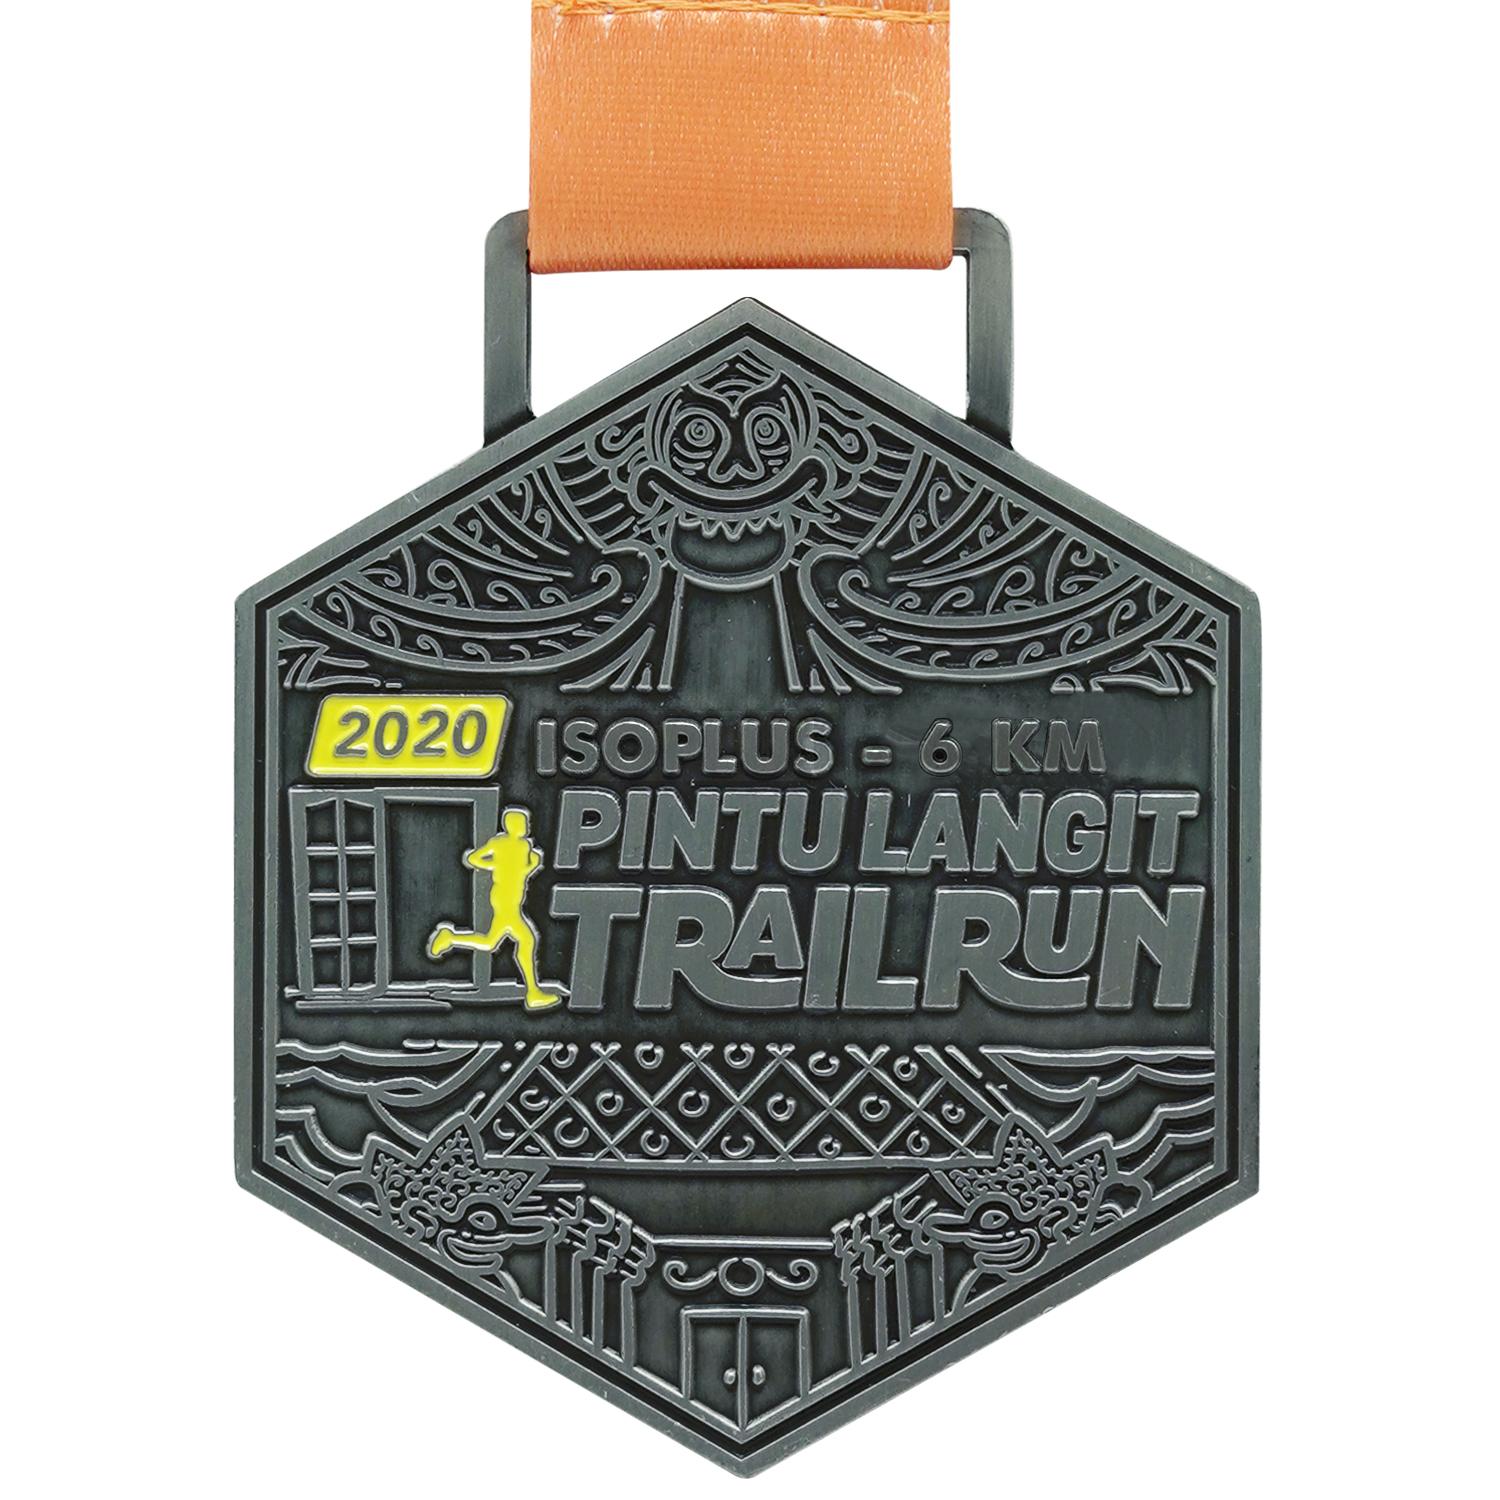 ISOPLUS - Pintu Langit Trail Run 2020